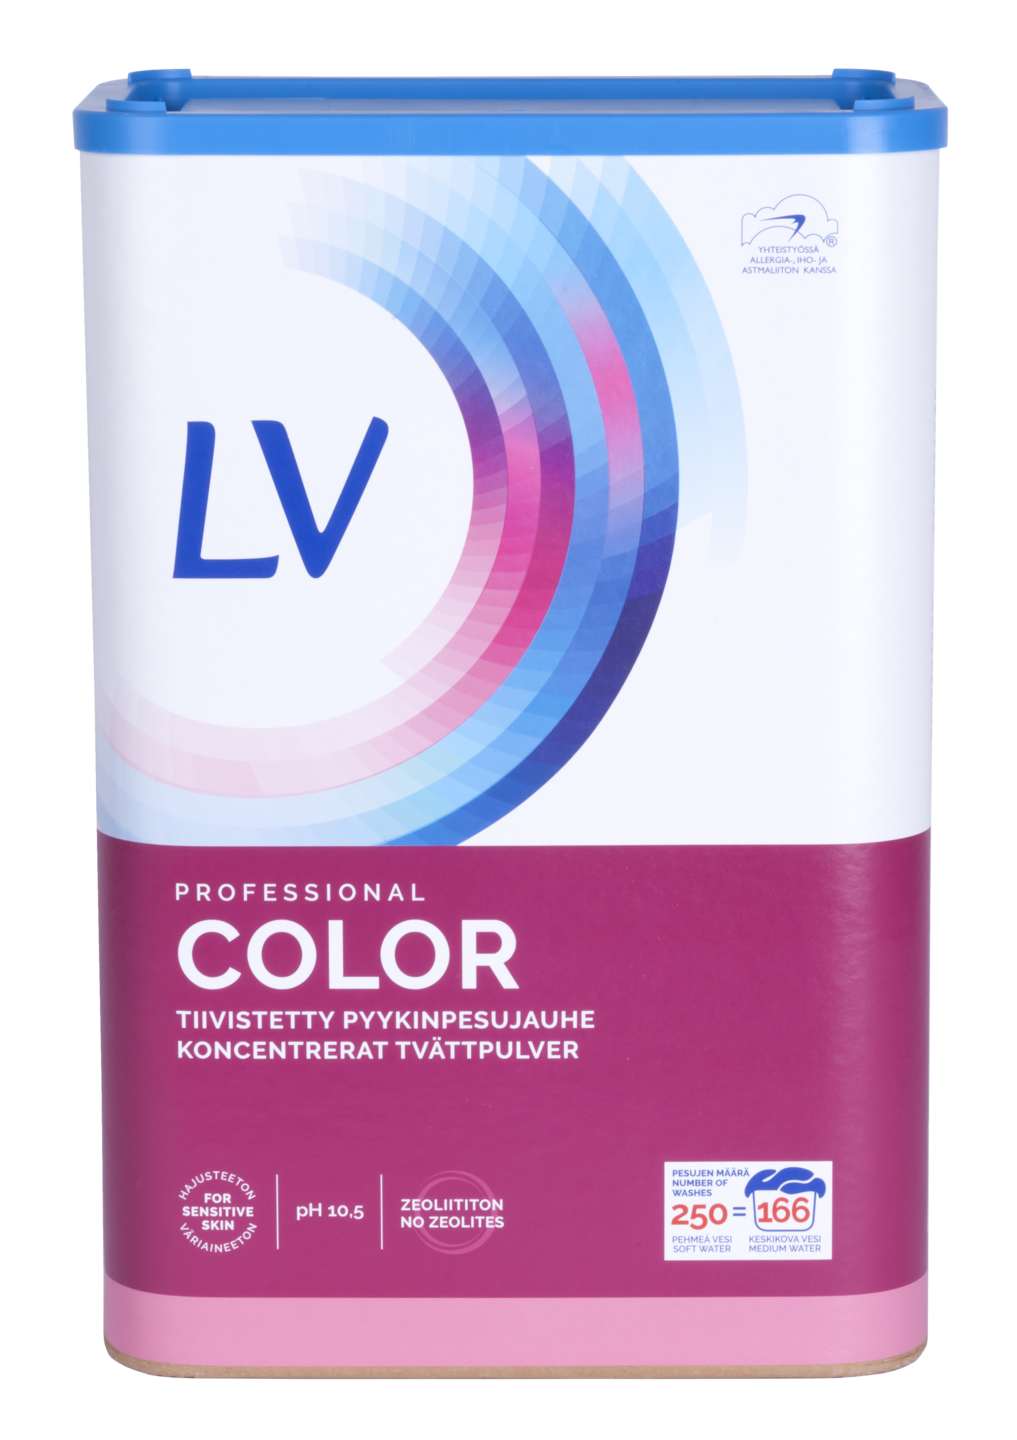 LV Pyykinpesujauhe Color Professional 8 kg